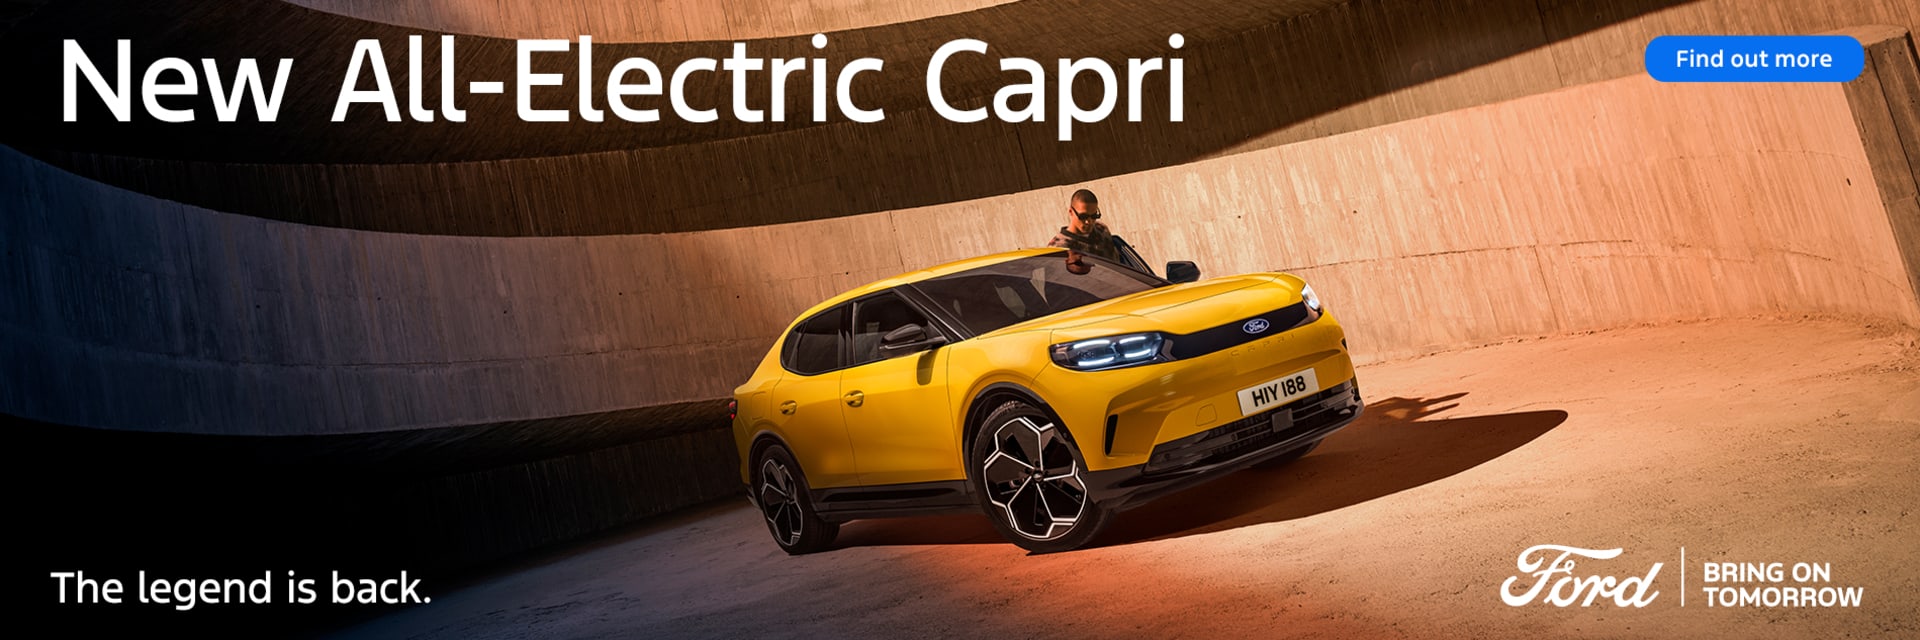 New All-Electric Capri